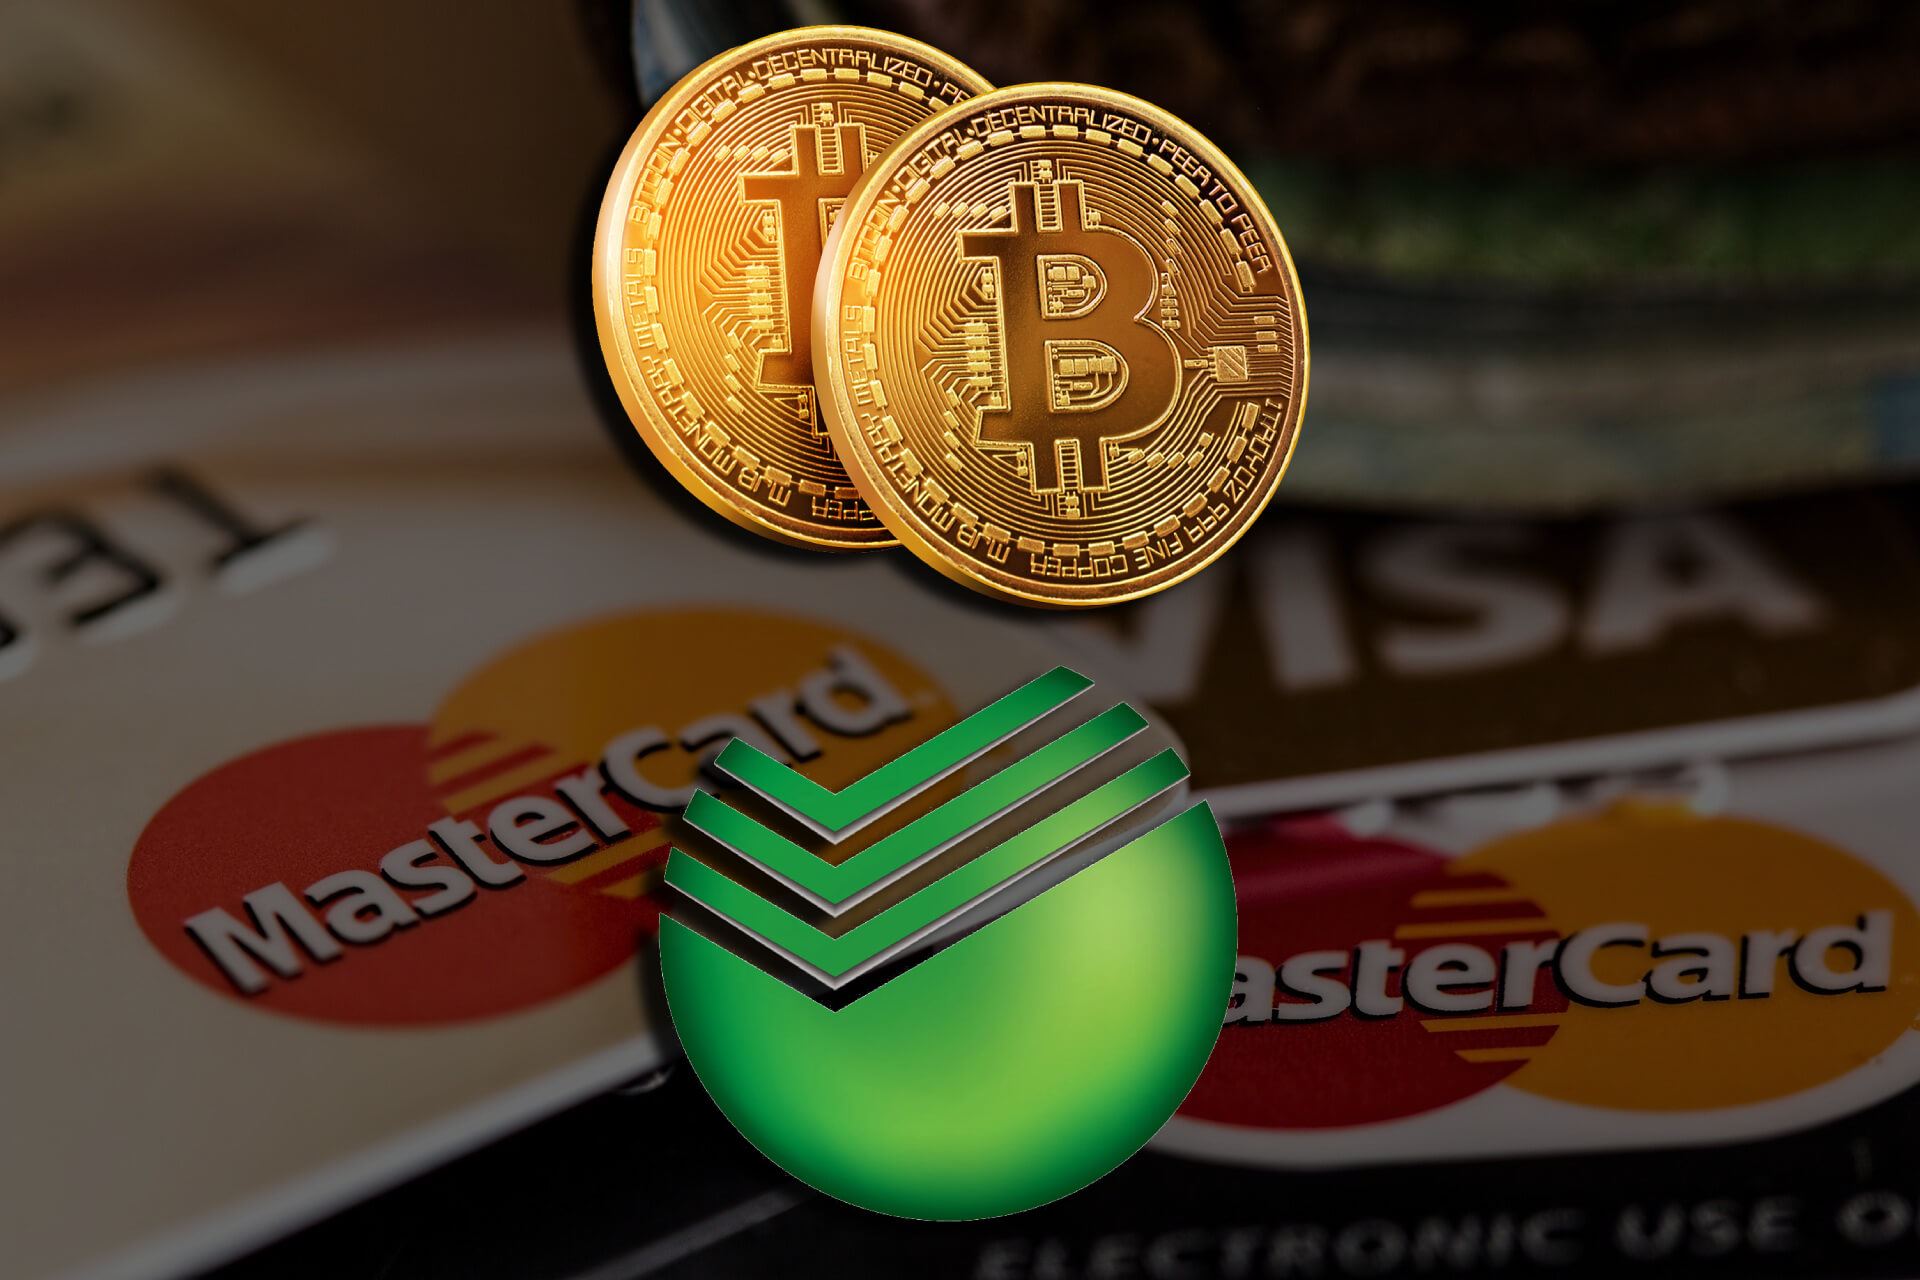 Home credit обмен биткоин как пополнить кошелек биткоинами через сбербанк онлайн